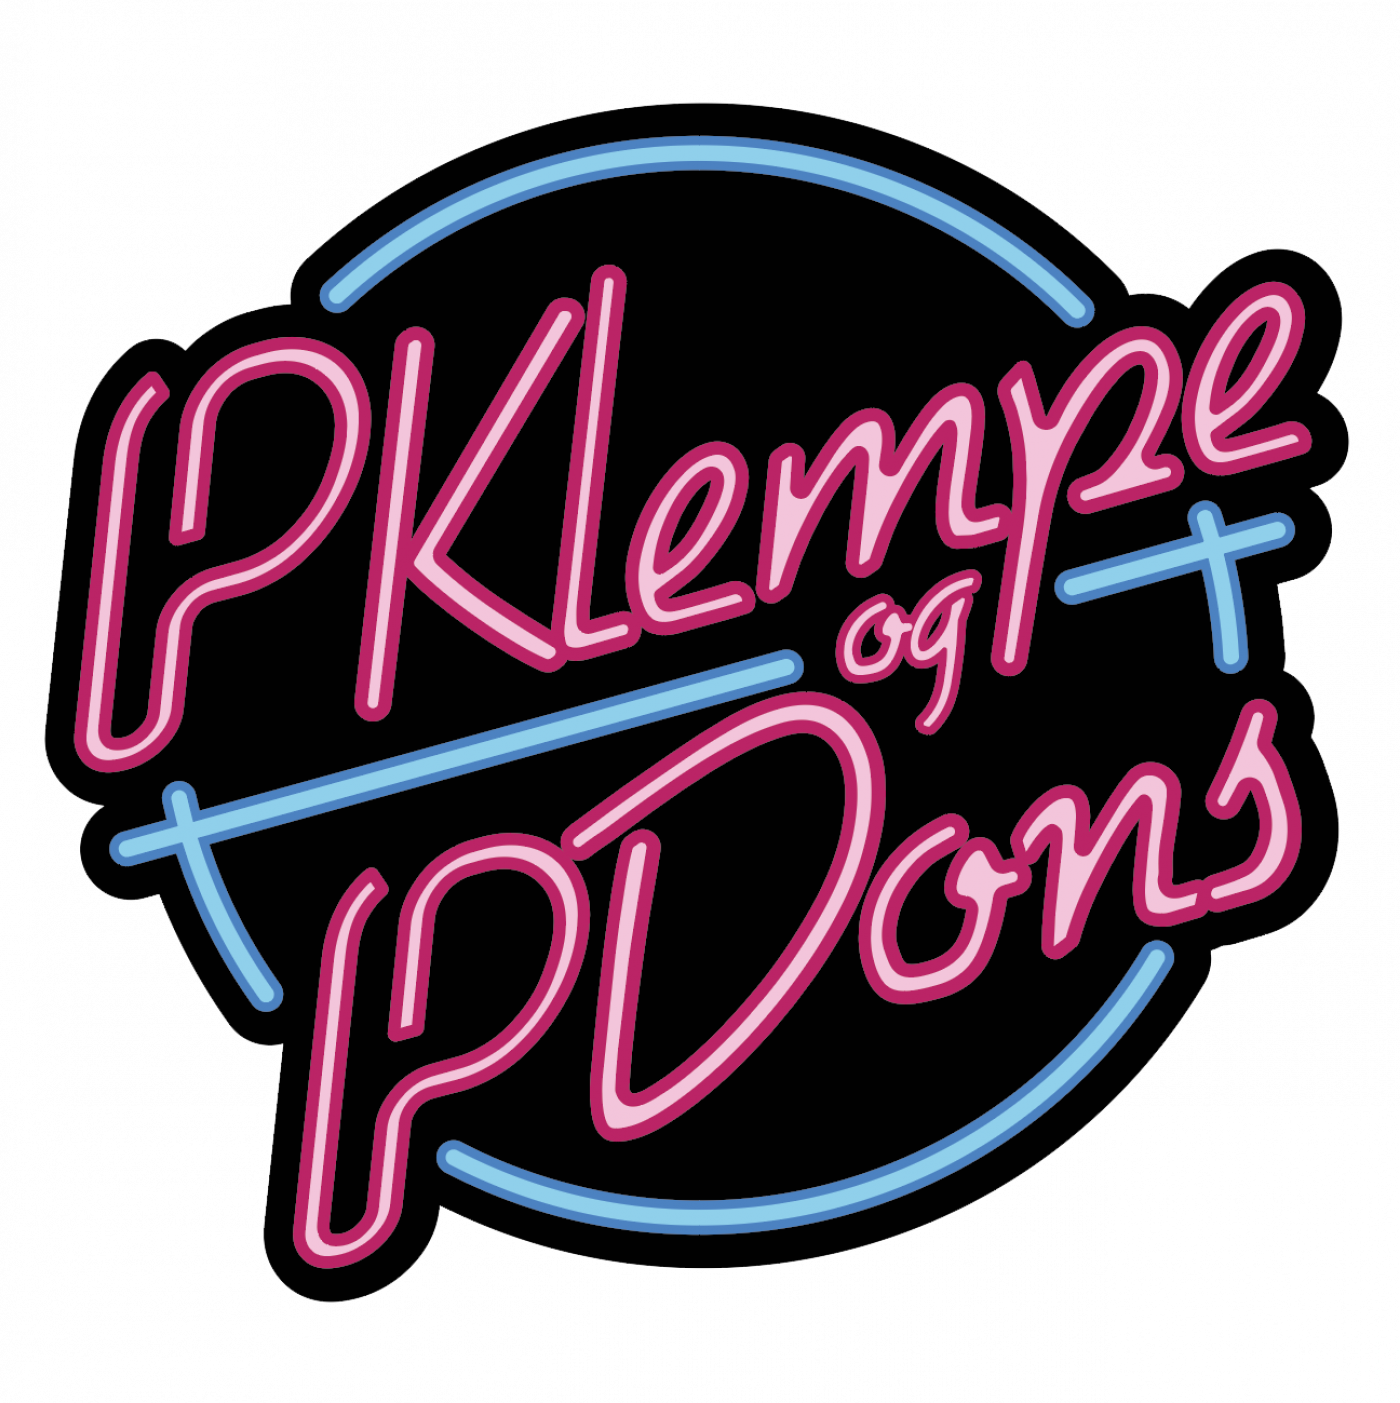 Klempe & Dons